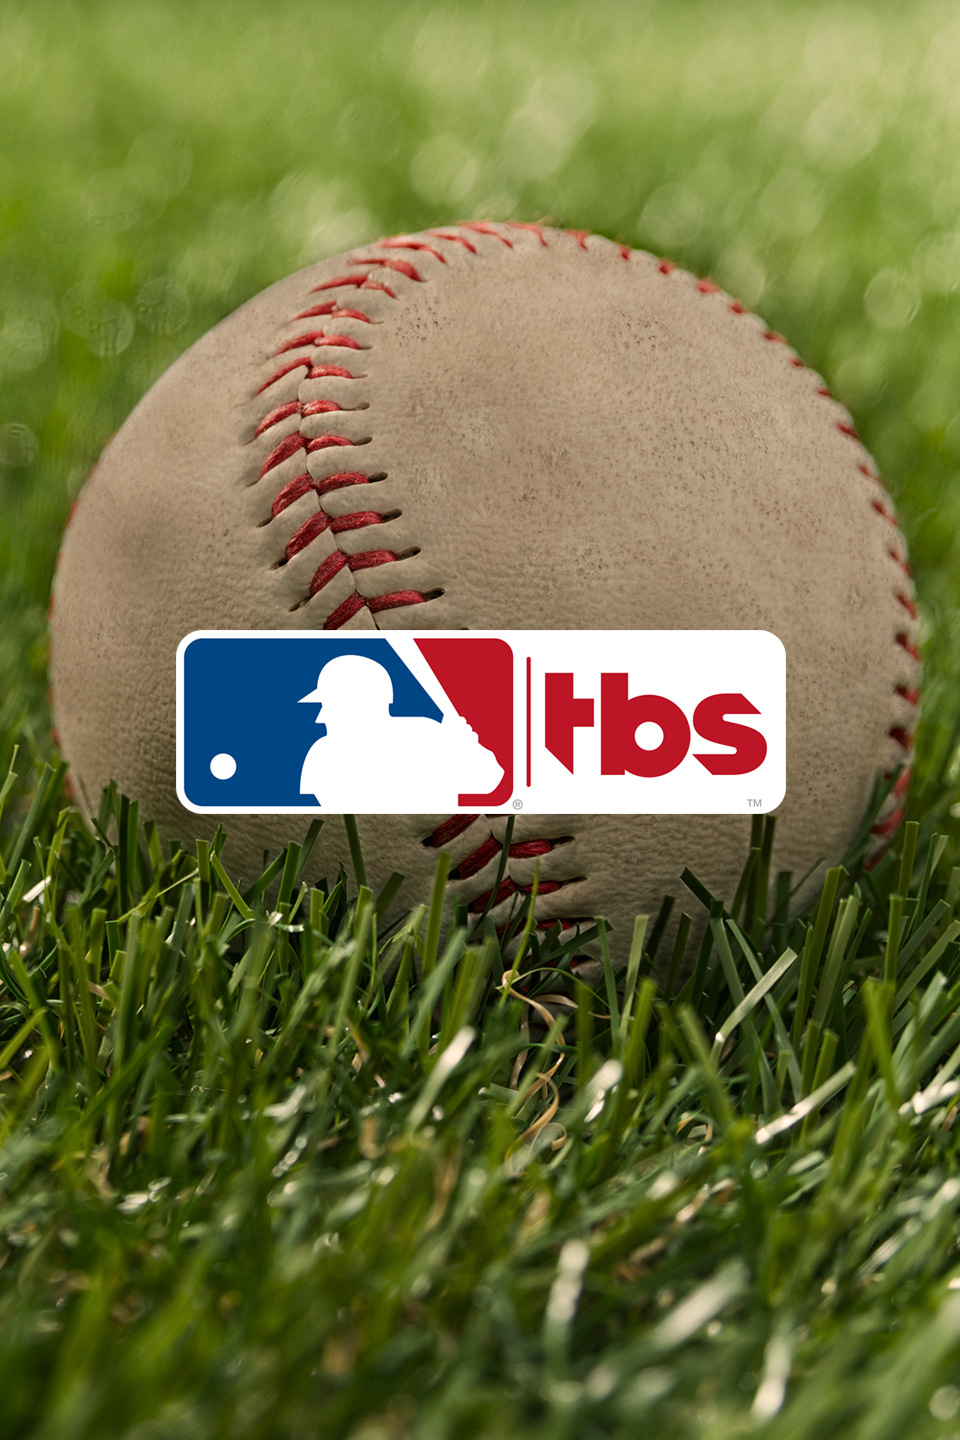 MLB on TBS Leadoff